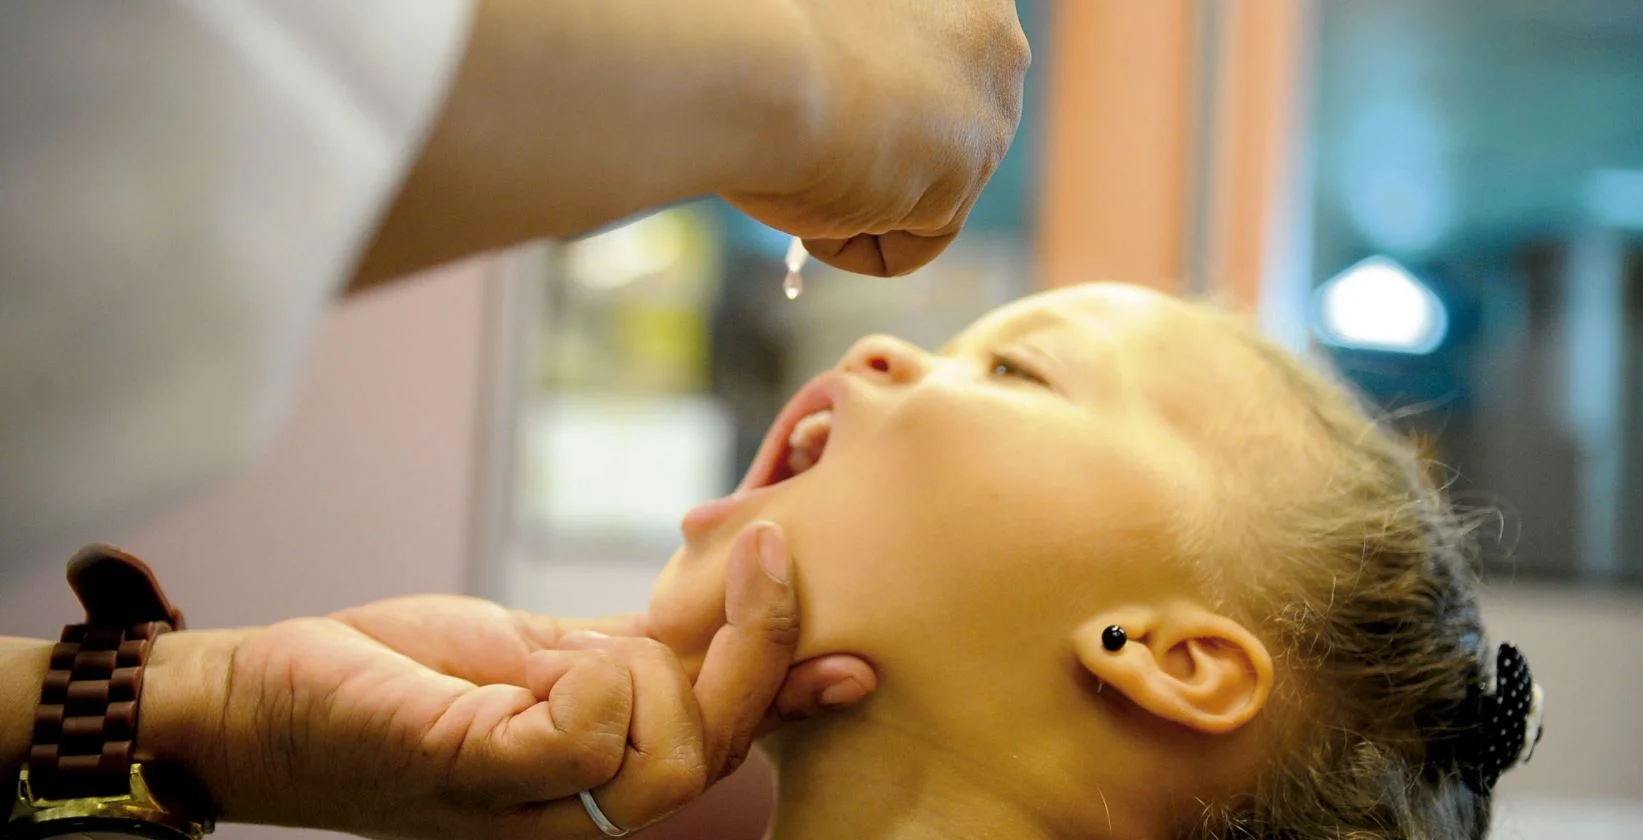 Foto mostra uma criança do sexo feminino recebendo uma vacina por via oral